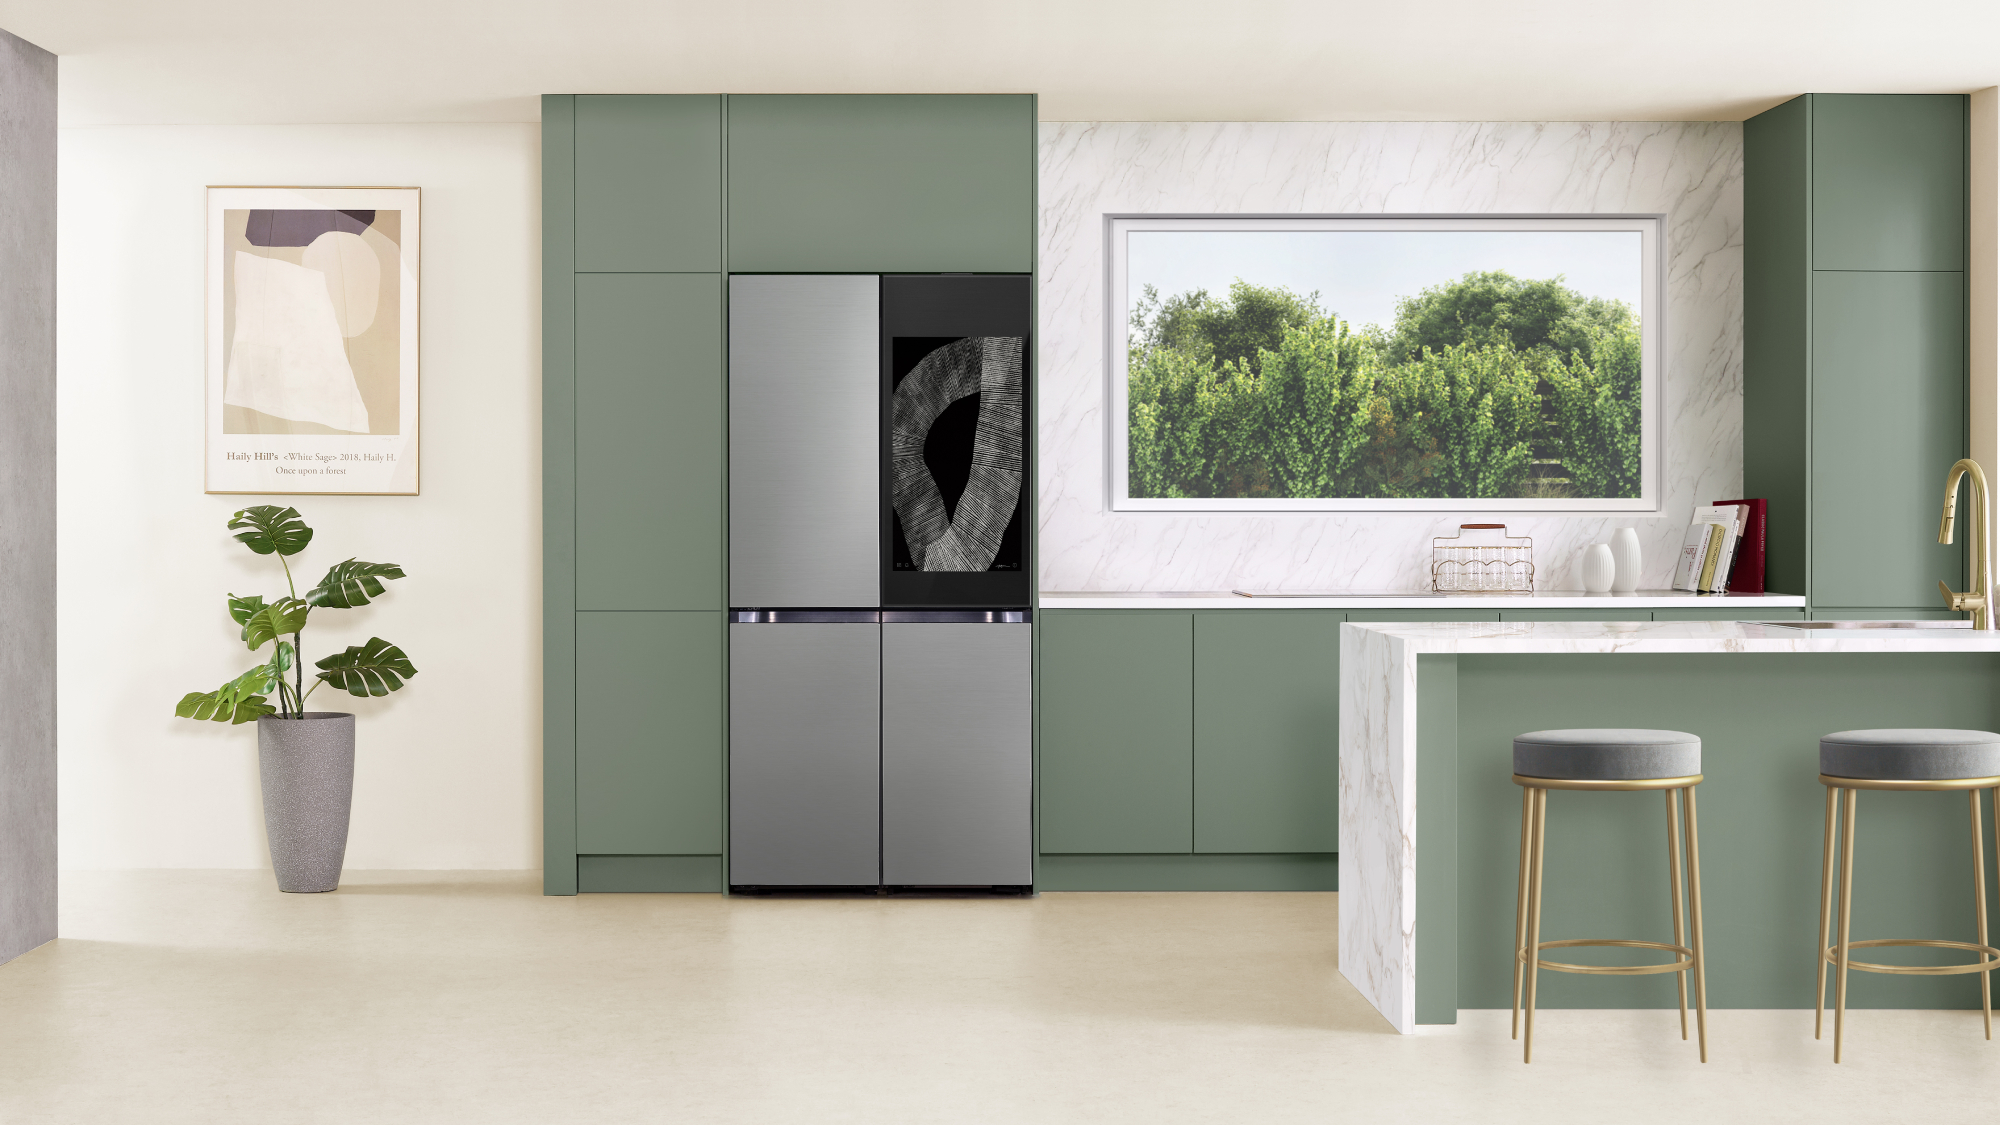 Samsung Bespoke 4-Door Flex AI Refrigerator in kitchen